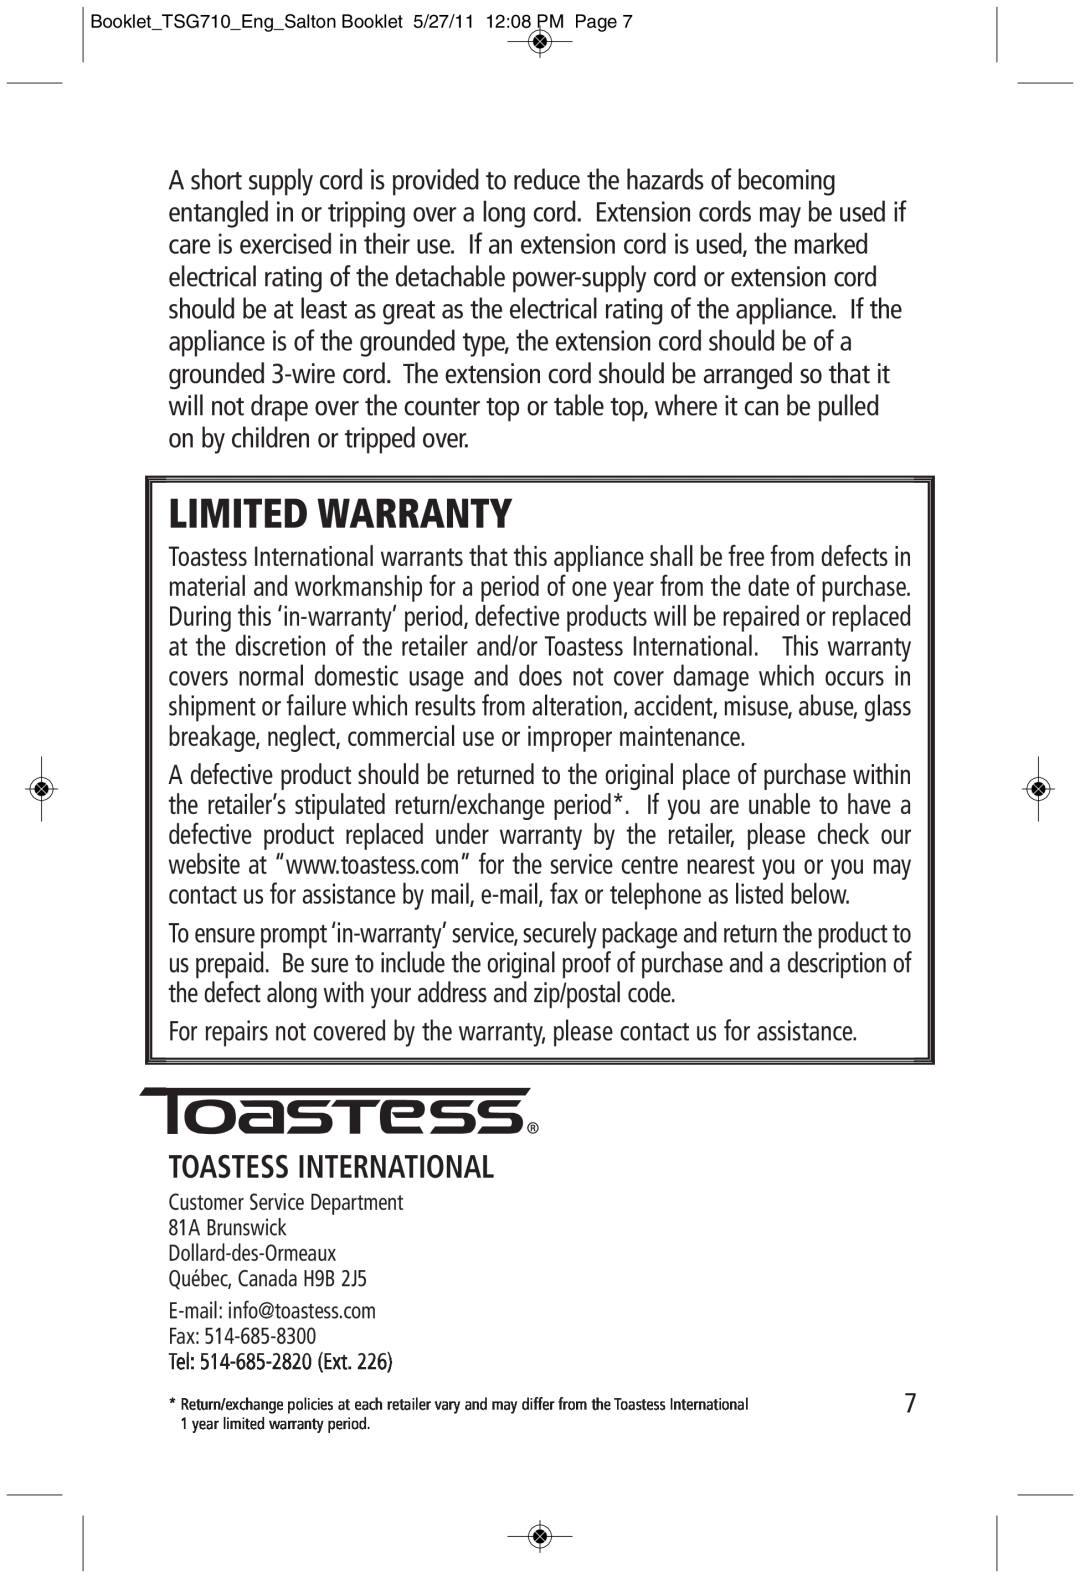 Toastess TSG710 manual Toastess International, Limited Warranty 